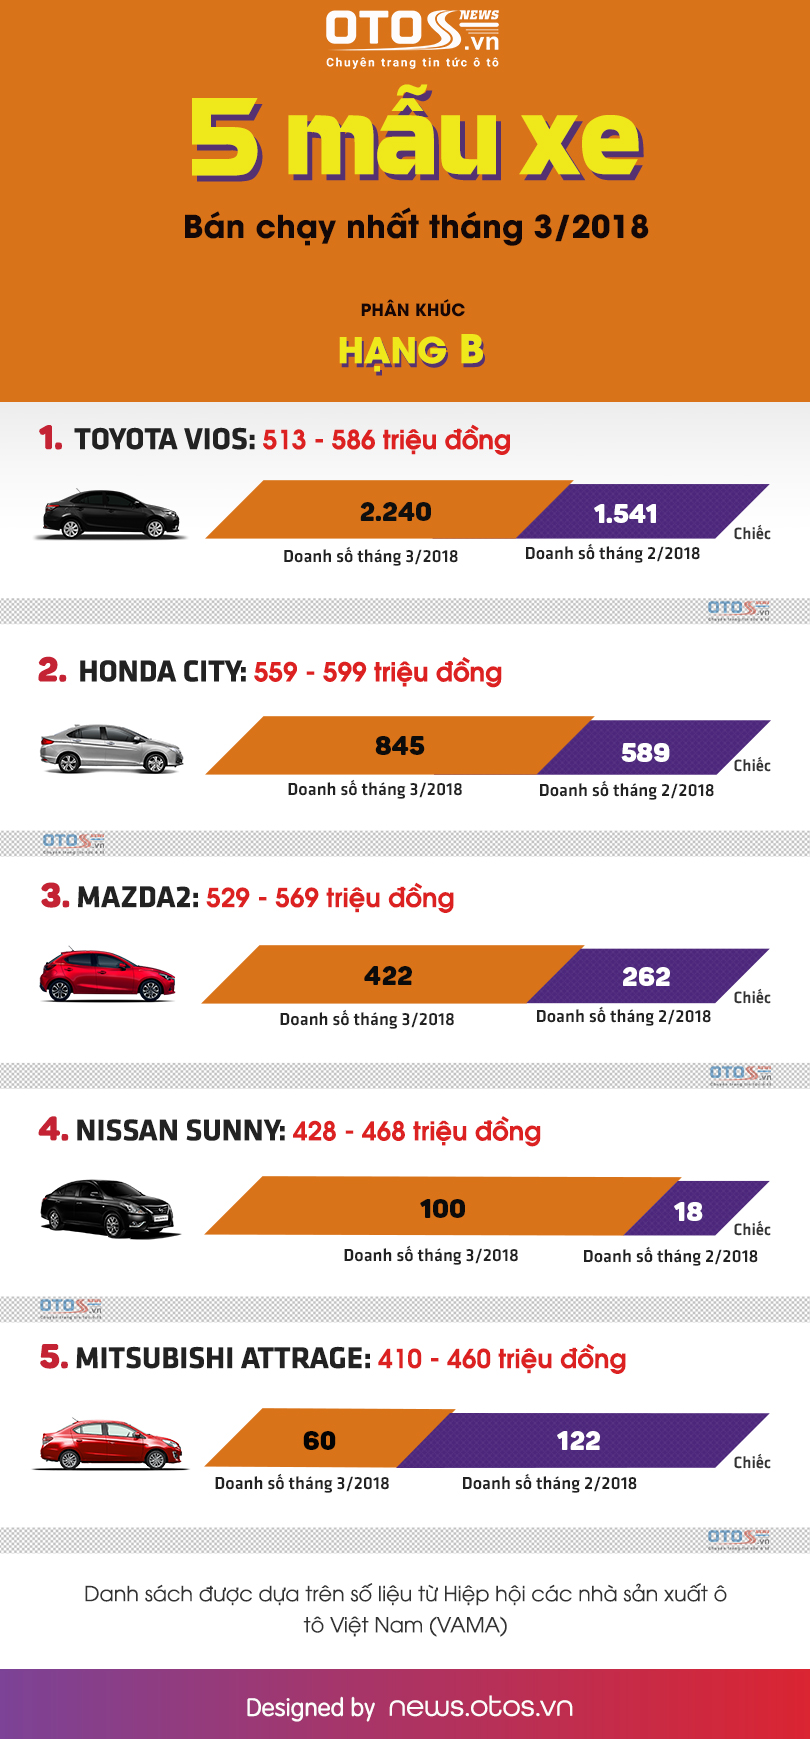 [Infographic] - 5 mẫu xe hạng B bán chạy nhất thị trường Việt tháng 3/2018